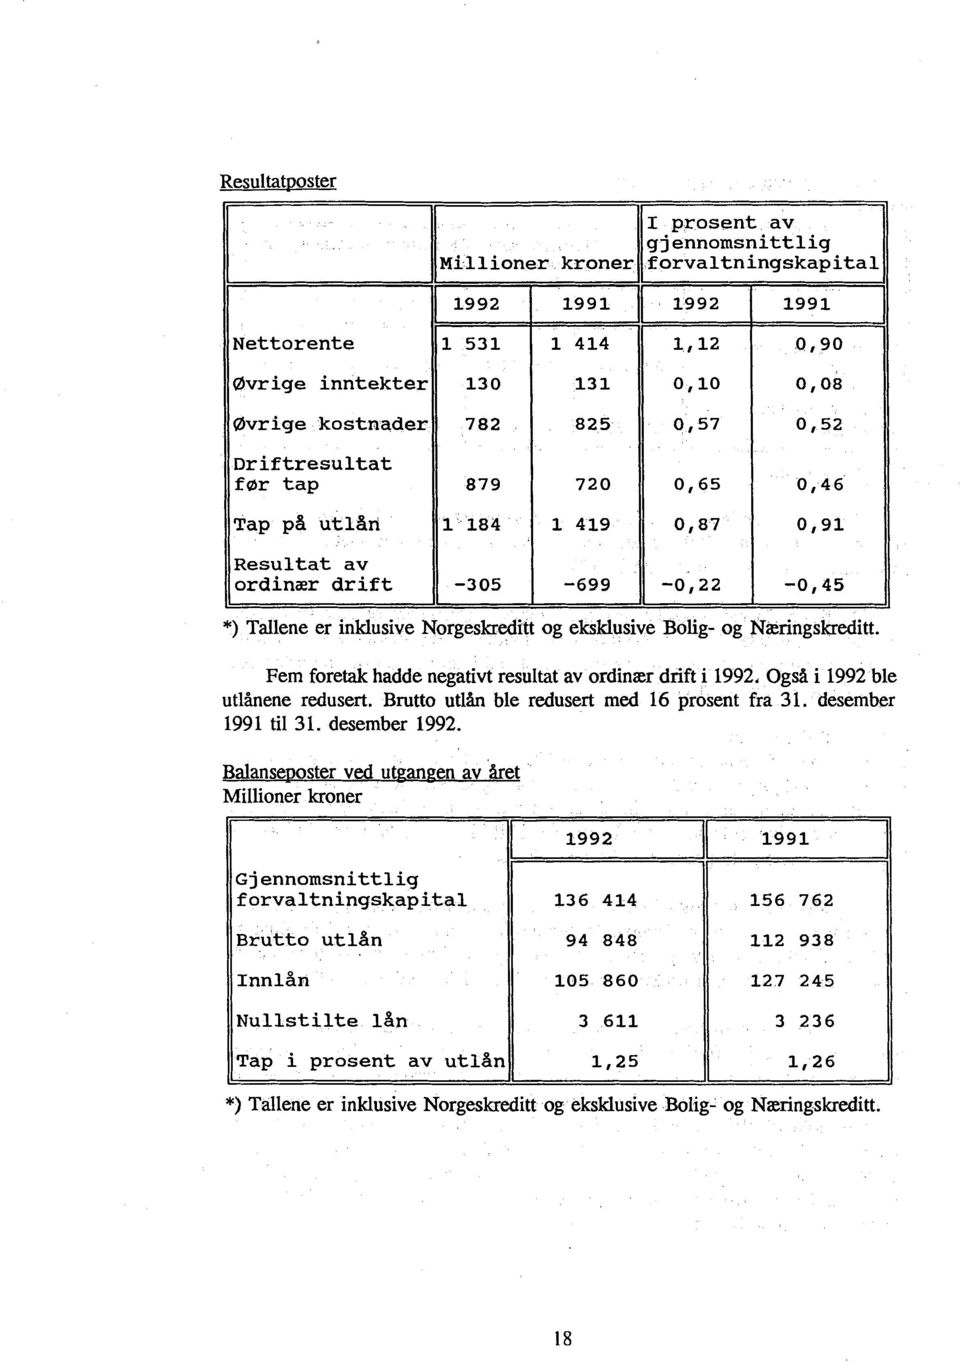 Fem foretak hadde negativt resultat av ordinær drift i 1992, Også i 1992 ble utlånene redusert. Brutto utlån ble redusert med 16 prosent fra 31. desember 1991 til 31. desember 1992.